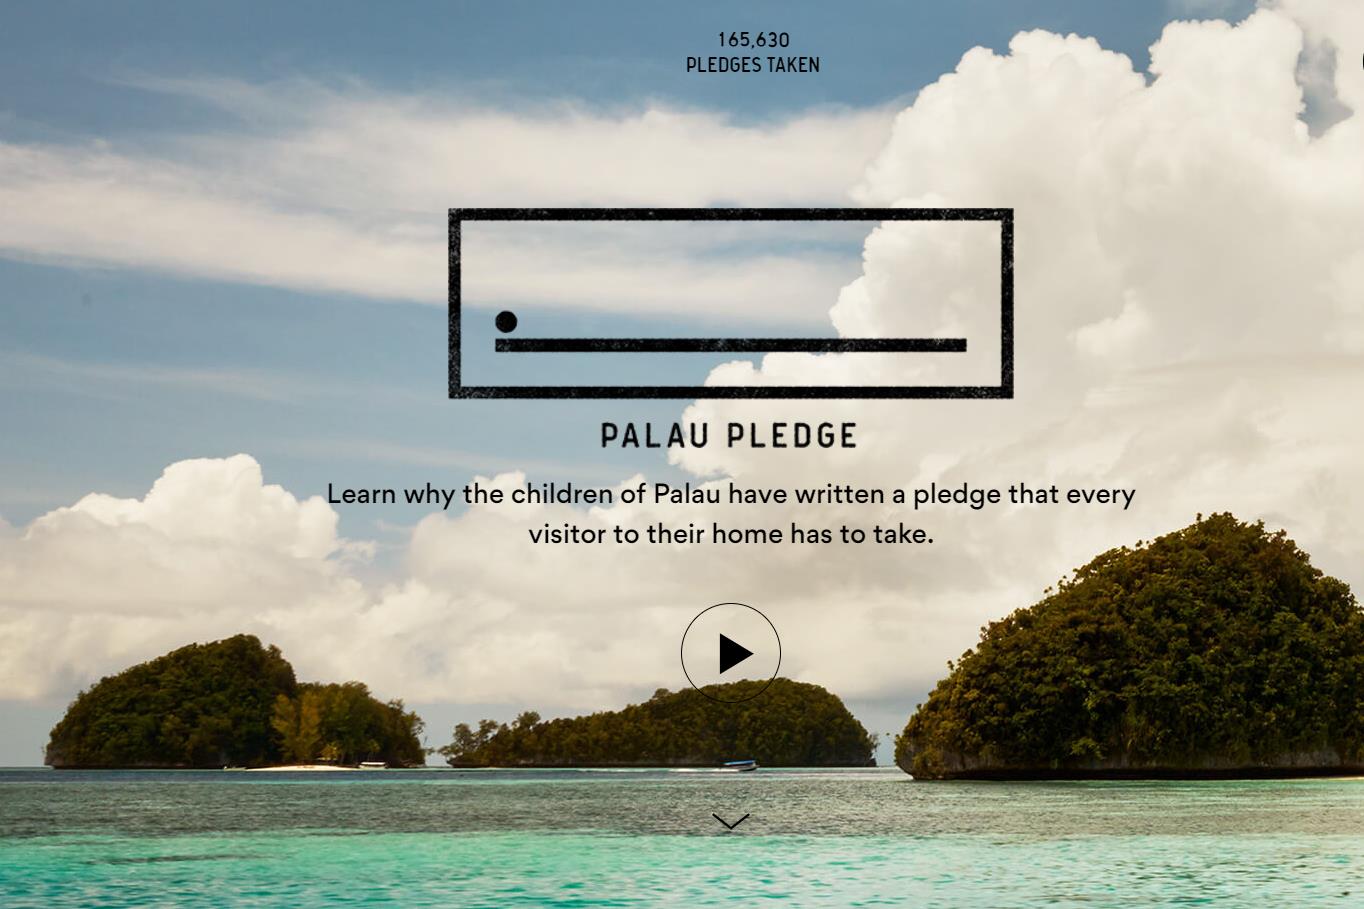 潜水圣地帕劳游客数量达到国民总数的八倍！15万游客签署“帕劳誓词”保护当地环境